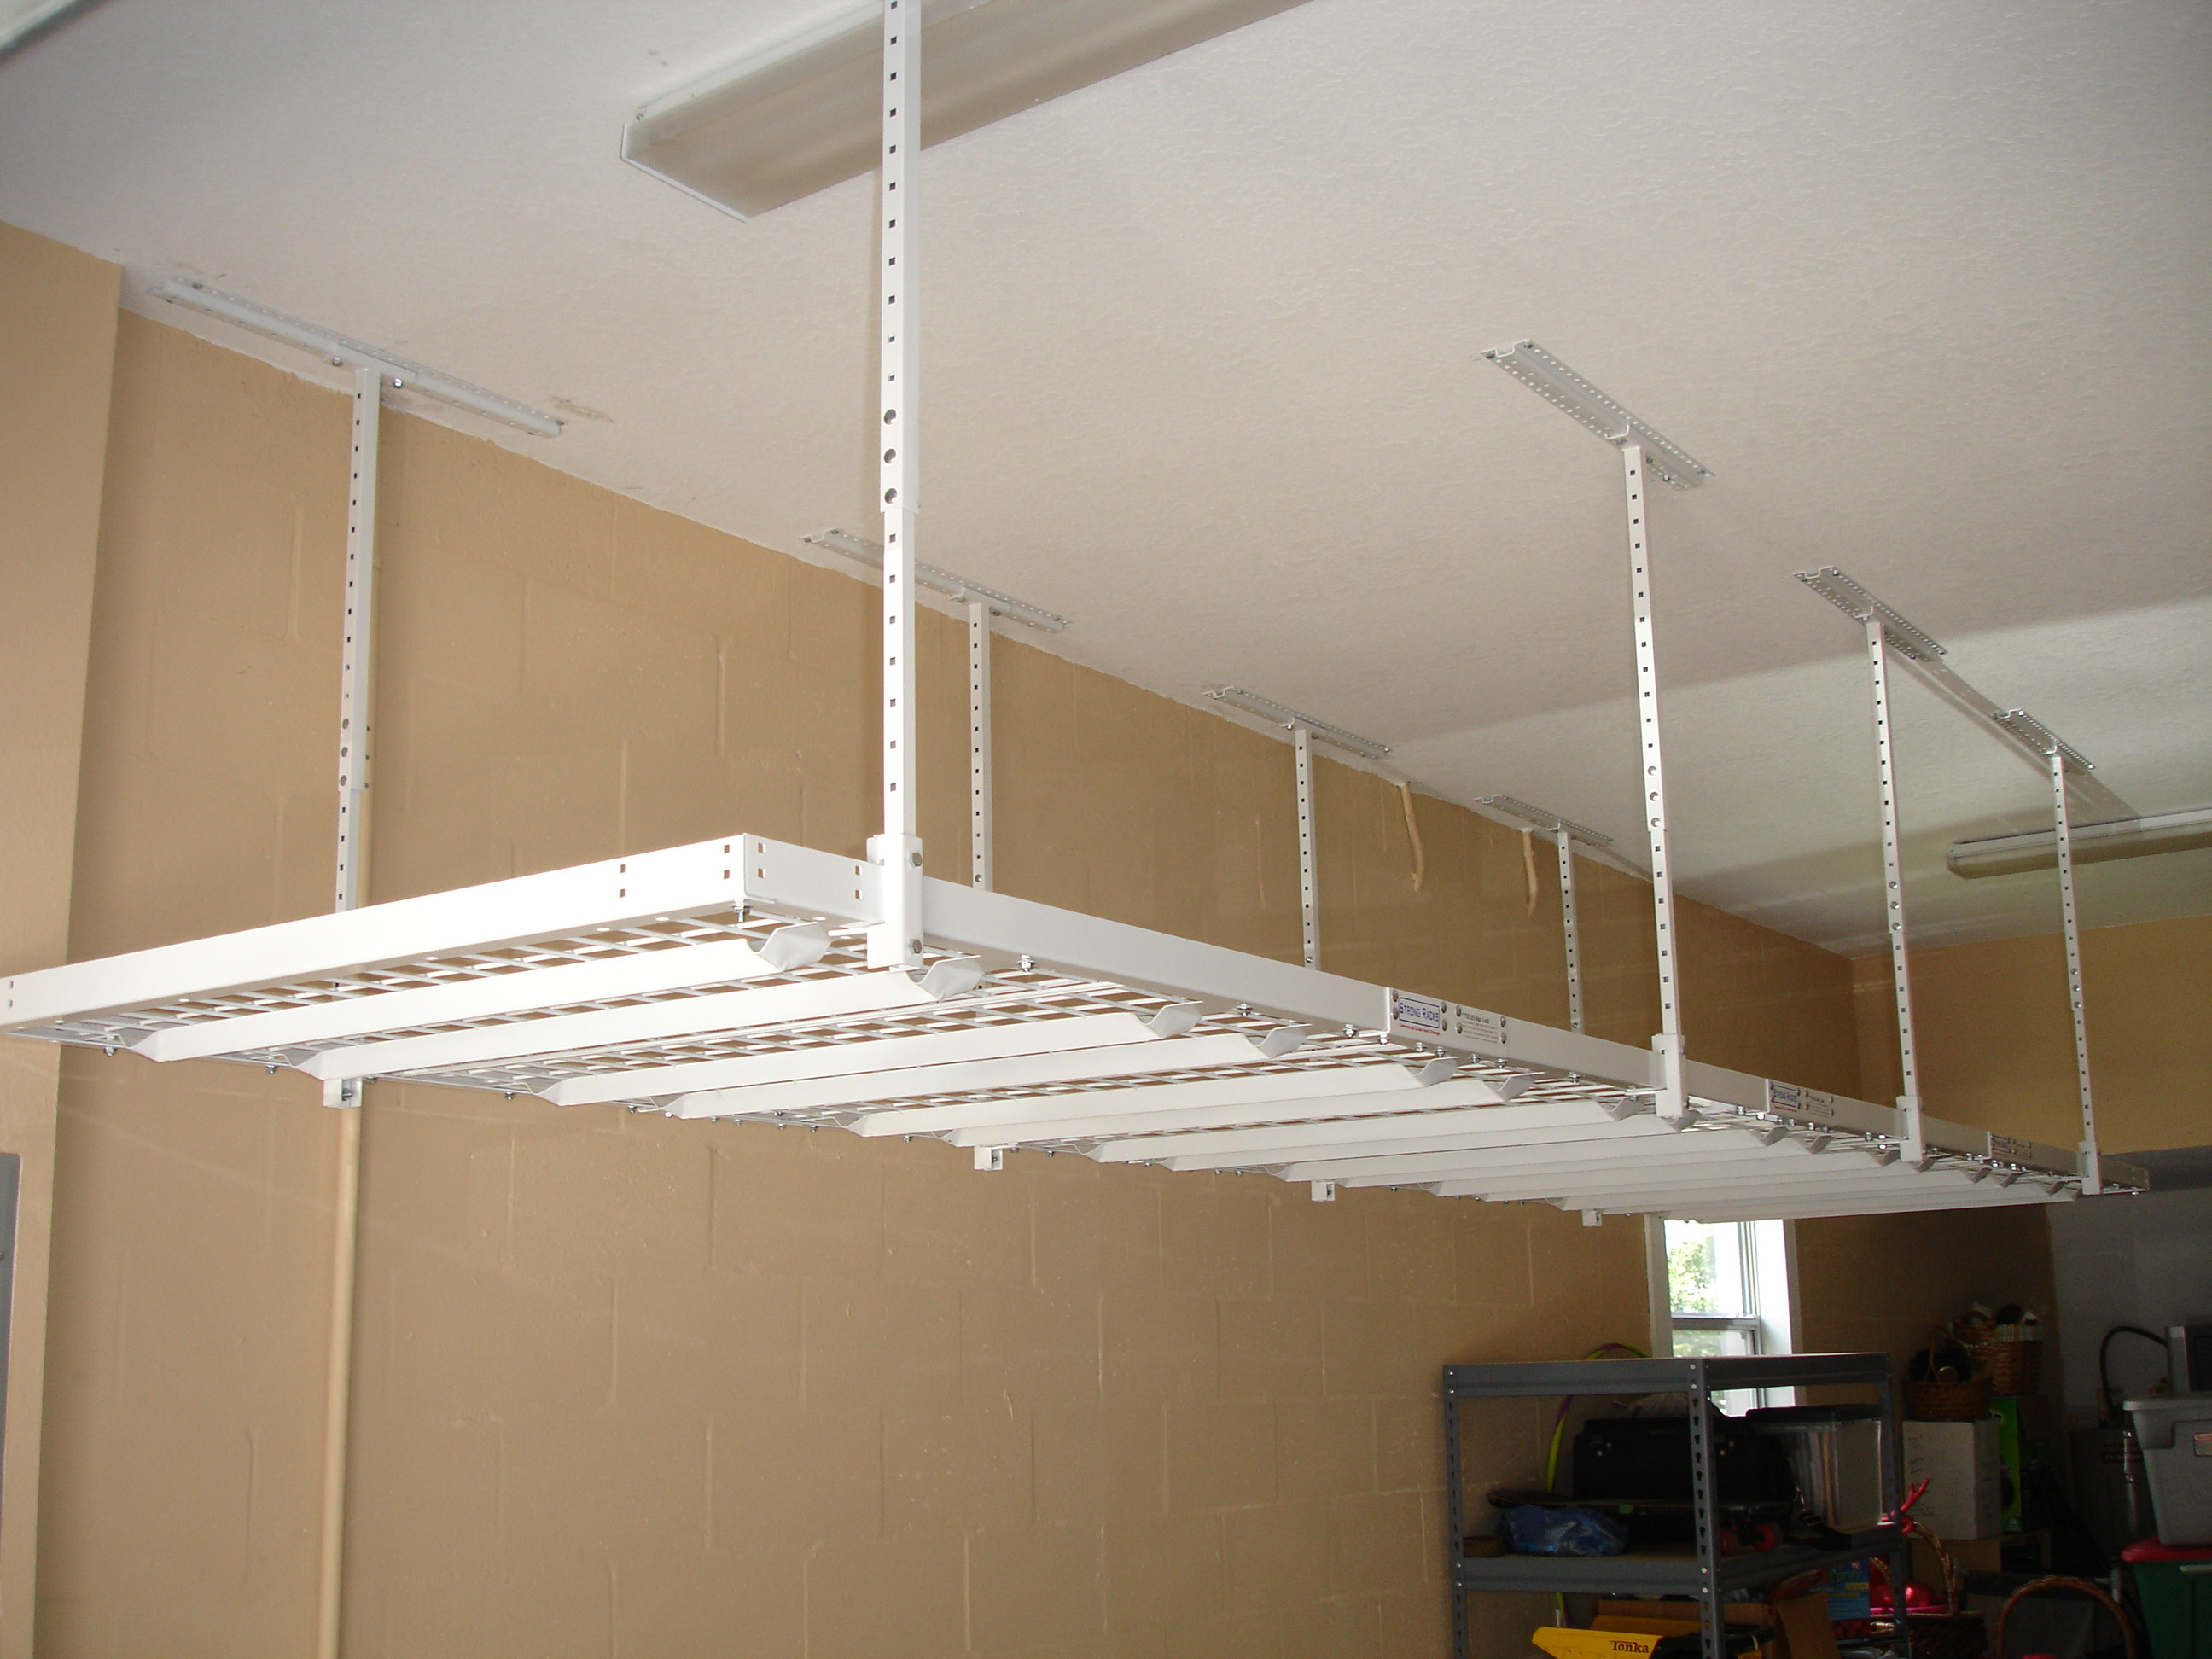 Best ideas about Garage Hanging Storage
. Save or Pin Best Overhead Garage Storage Rack Ideas Now.